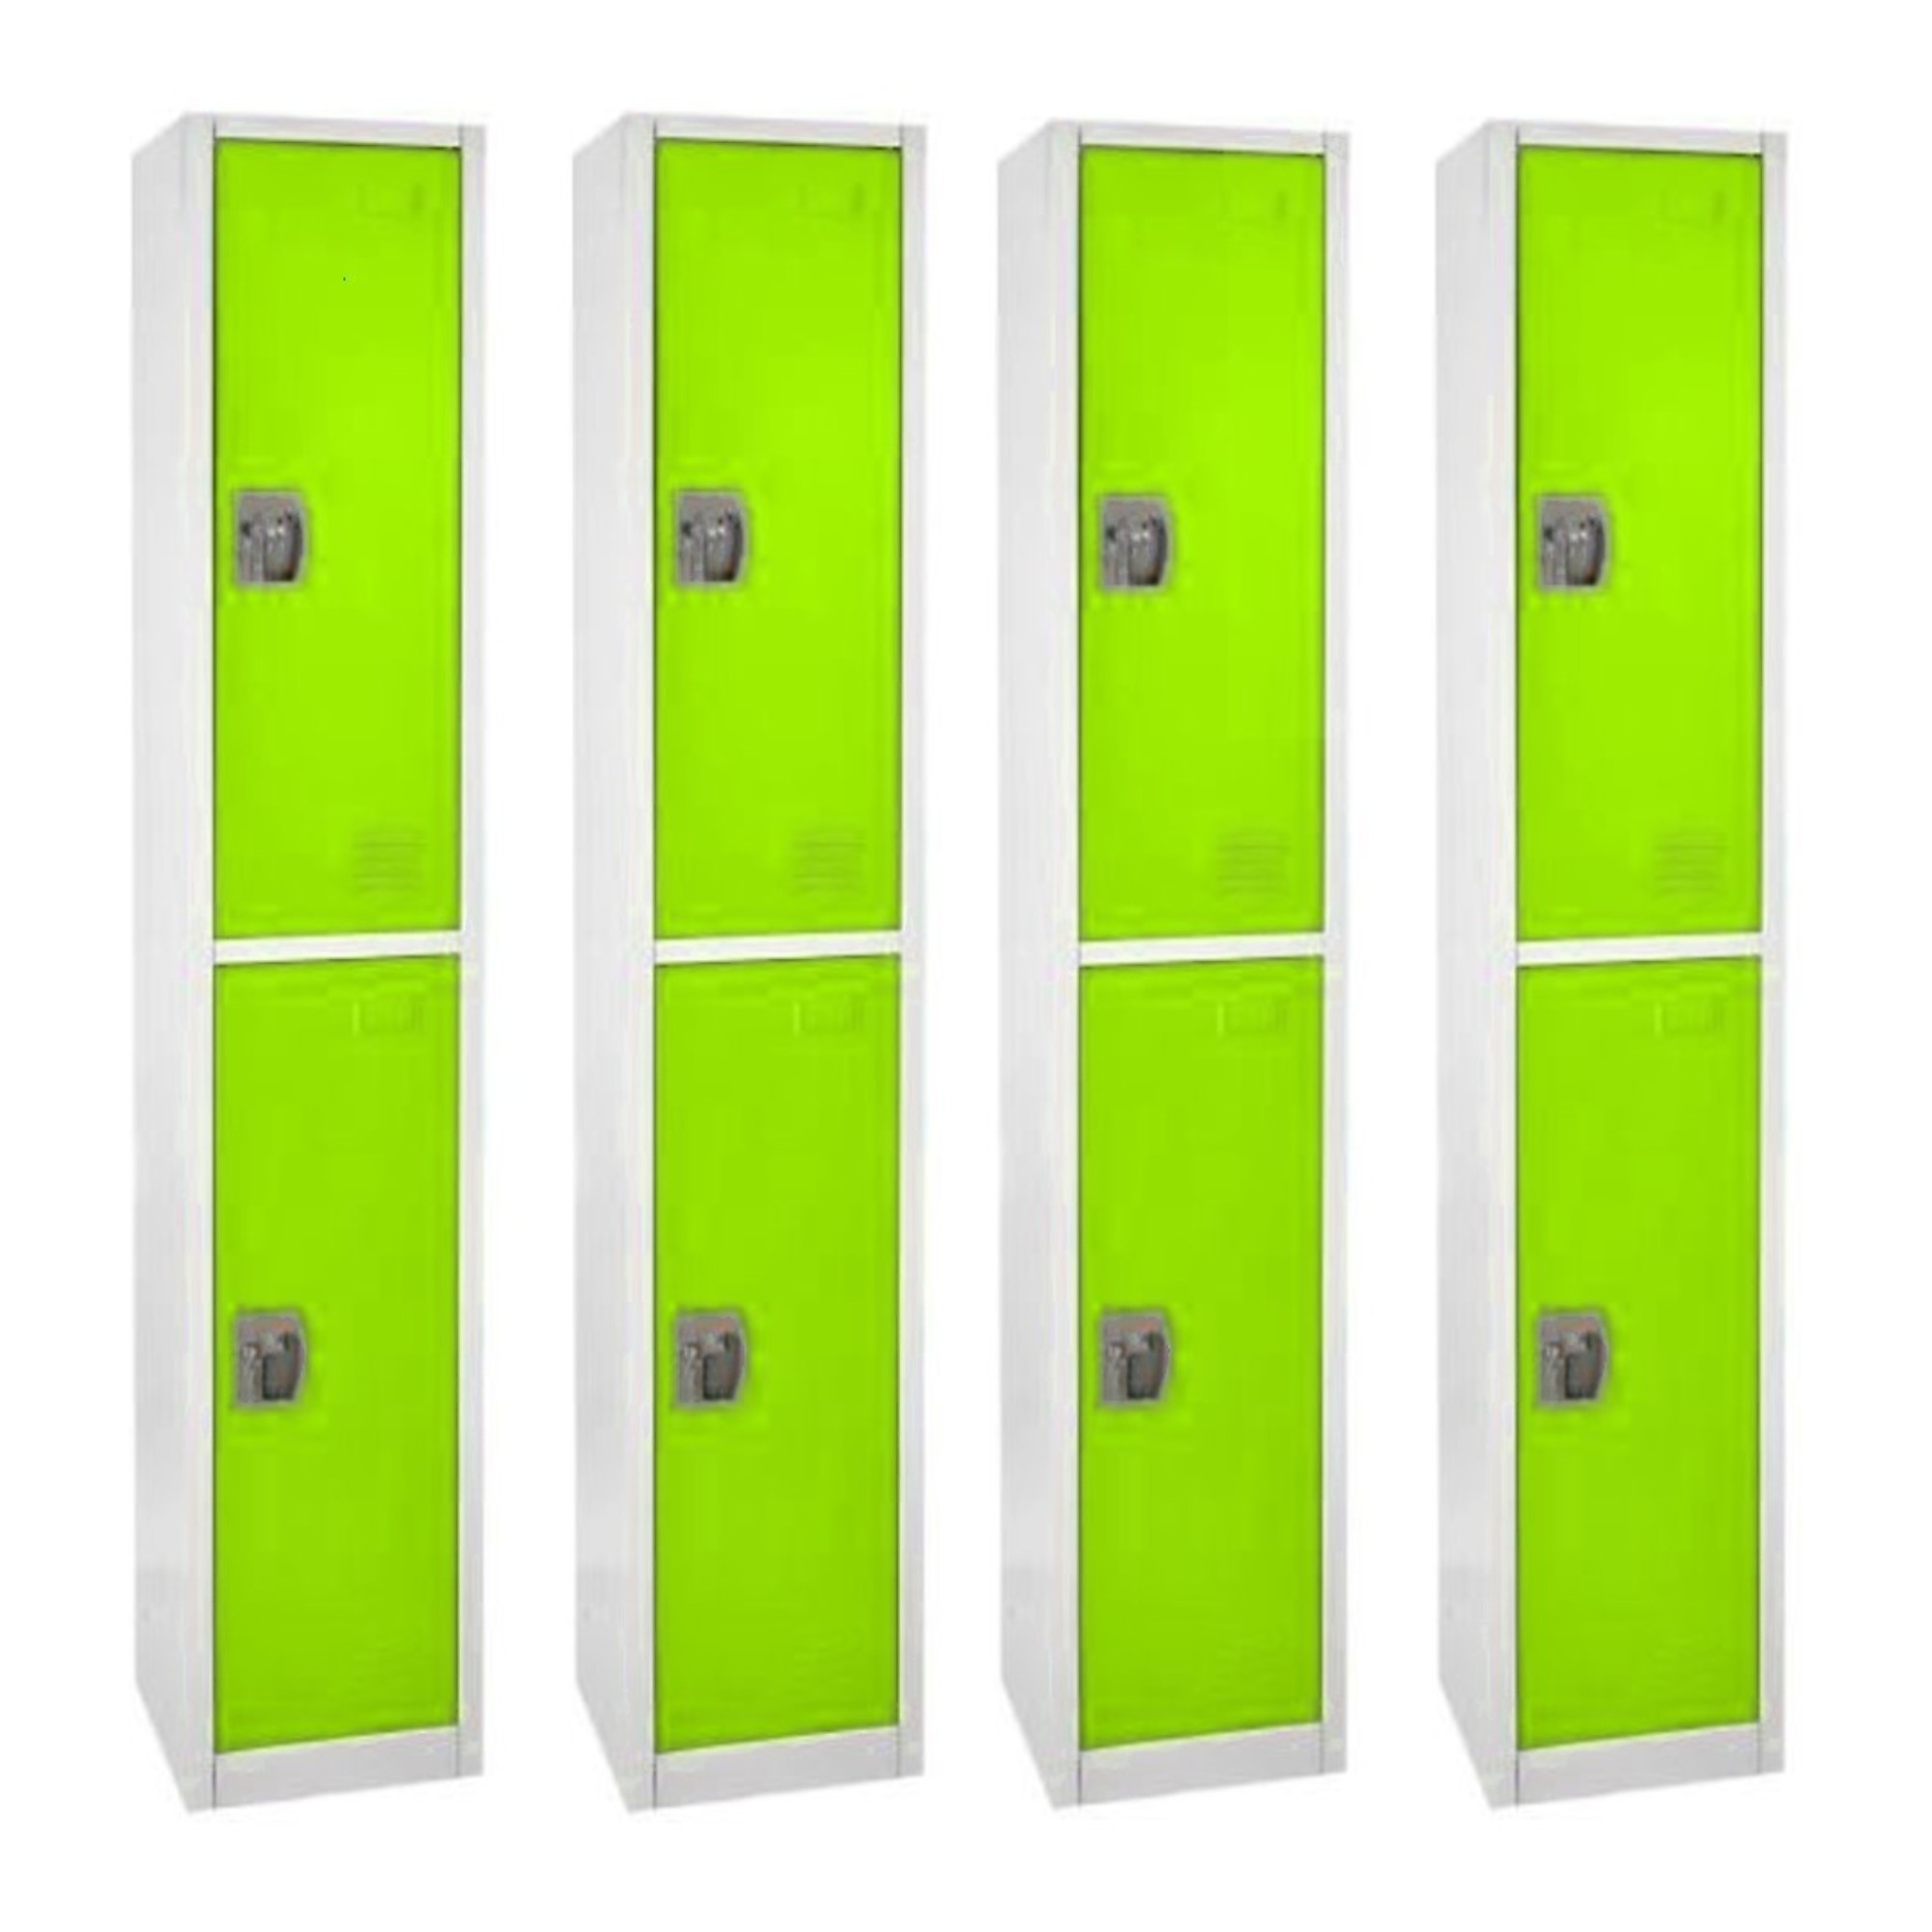 Alpine, 72Inch H 2-Tier Steel Storage Locker, Green, 4-Pack, Height 72 in, Width 12 in, Color Green, Model ADI629-202-GRN-4PK